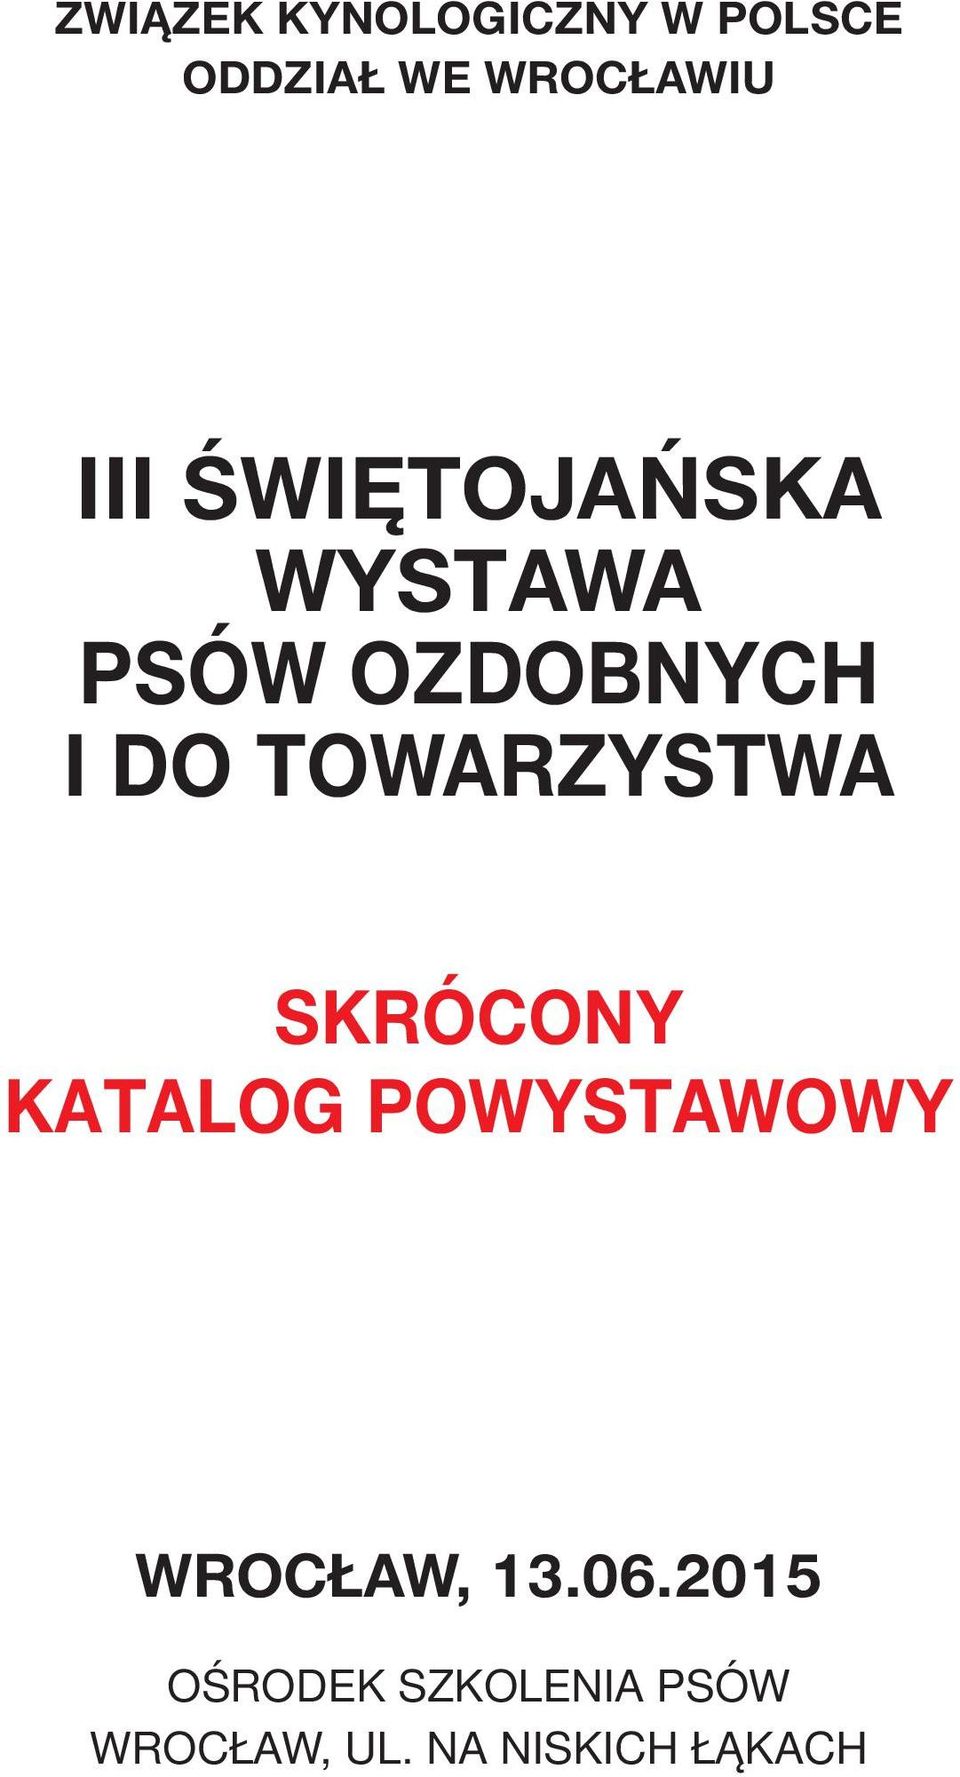 TOWARZYSTWA SKRÓCONY KATALOG POWYSTAWOWY WROCŁAW, 13.